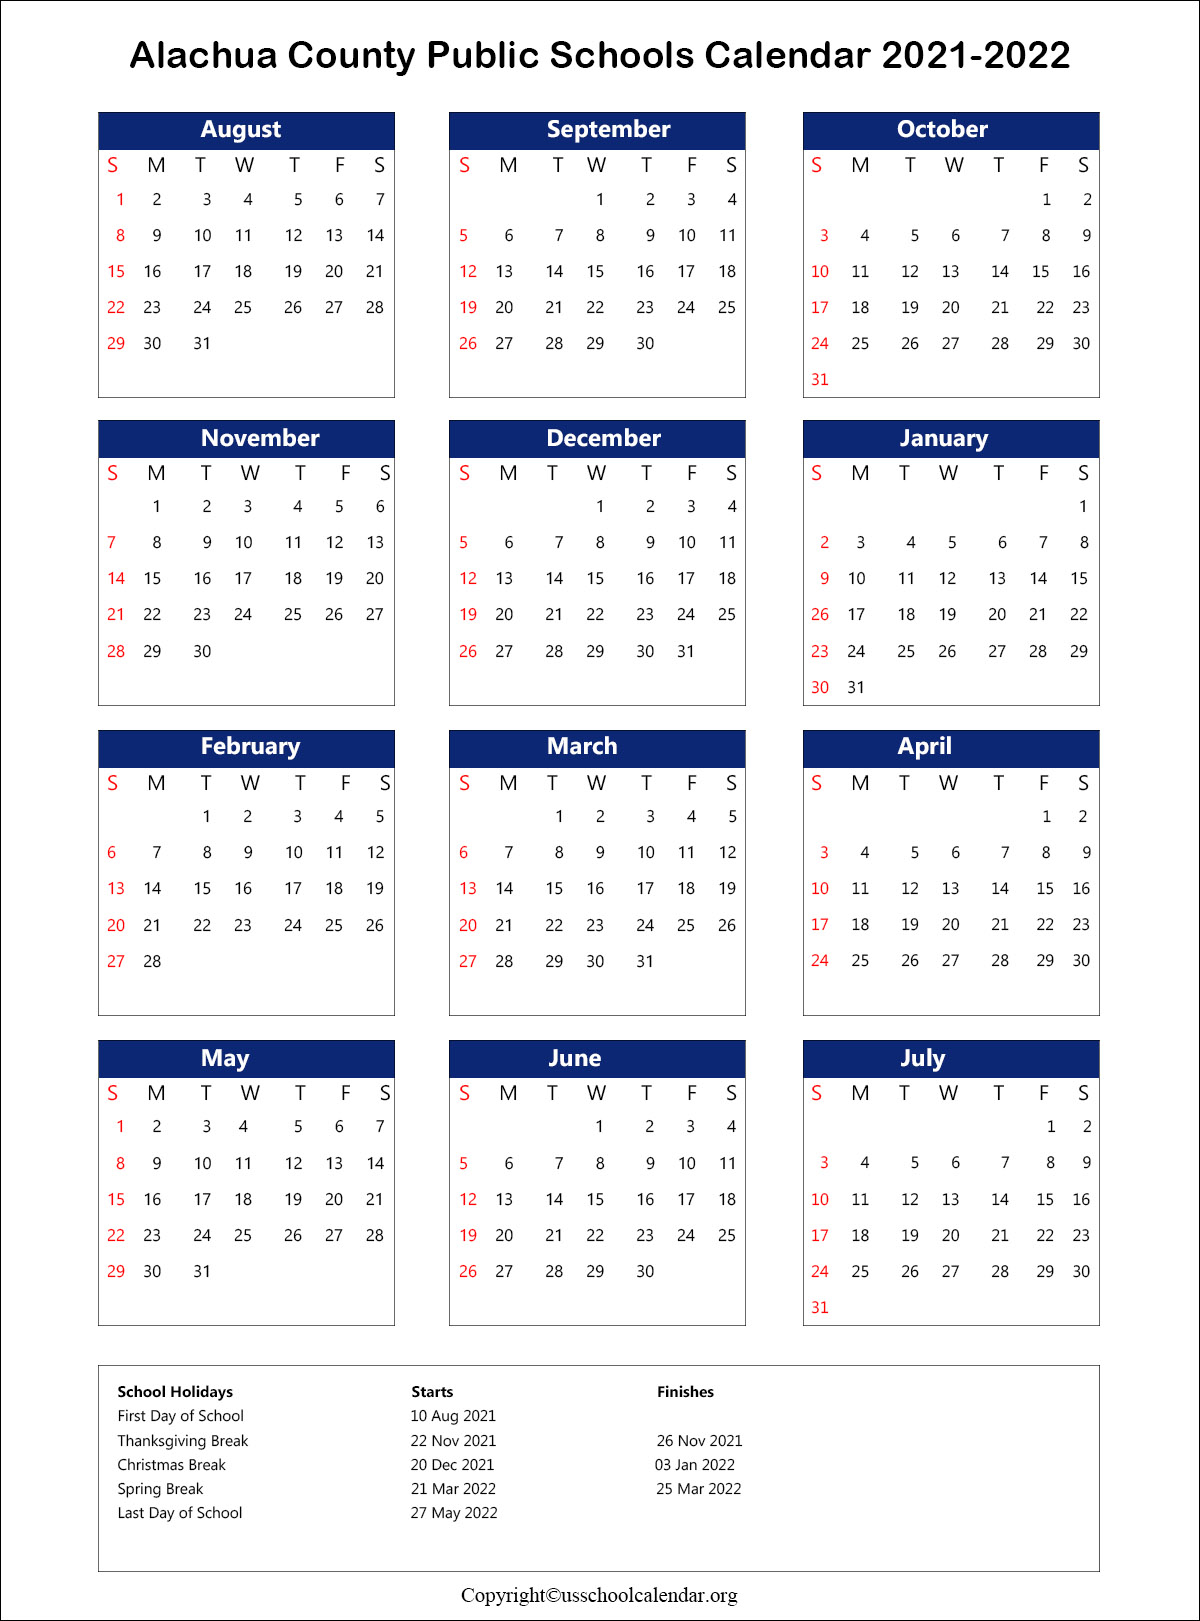 Alachua County School Calendar with Holidays 20212022